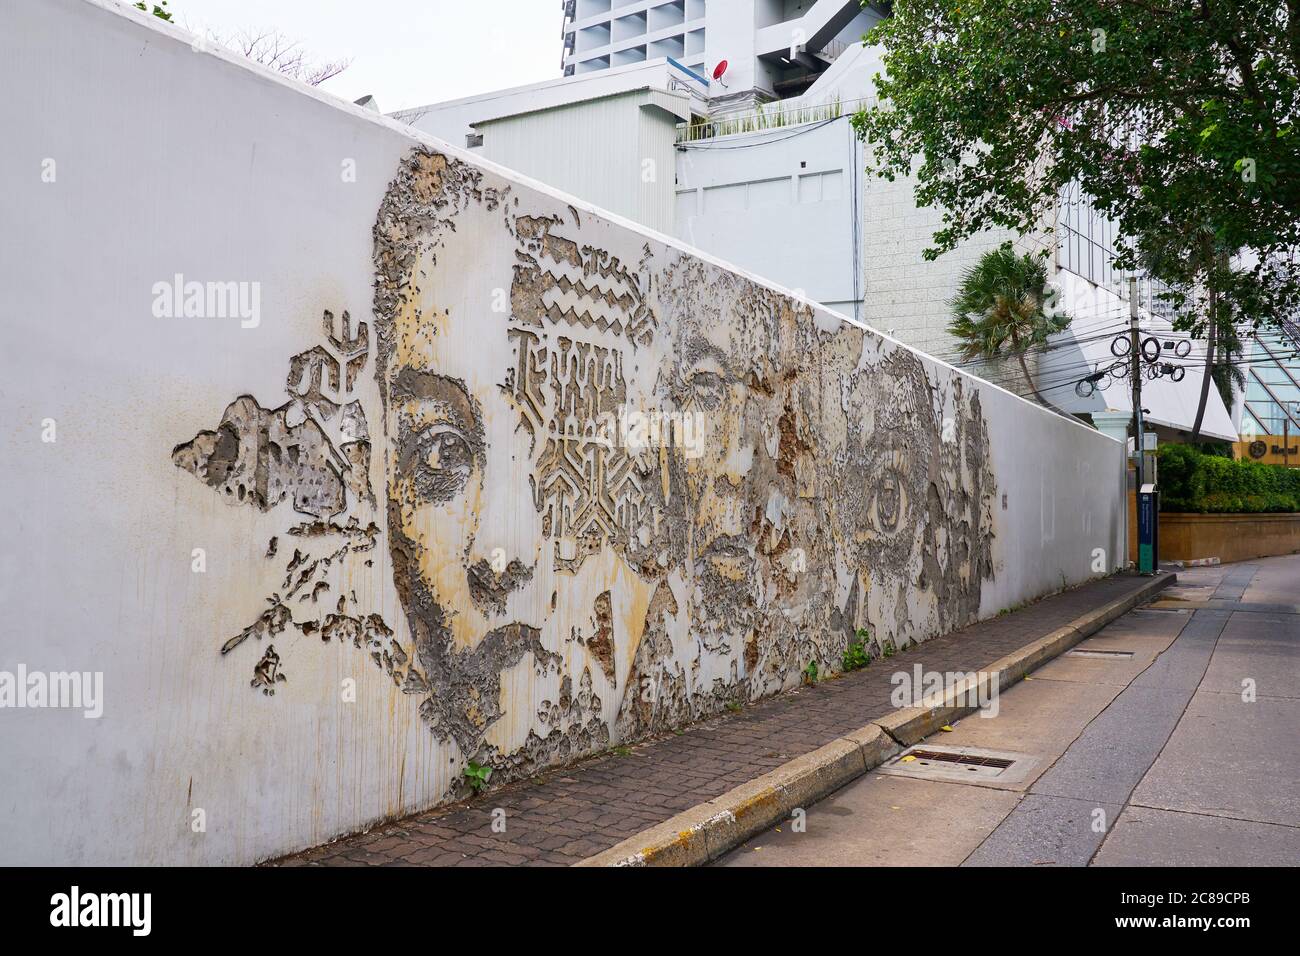 Der portugiesische Künstler Alexandre Farto schuf dieses Kunstwerk an der Wand der portugiesischen Botschaft in Bangok. Sein Künstlername ist Vhils Stockfoto